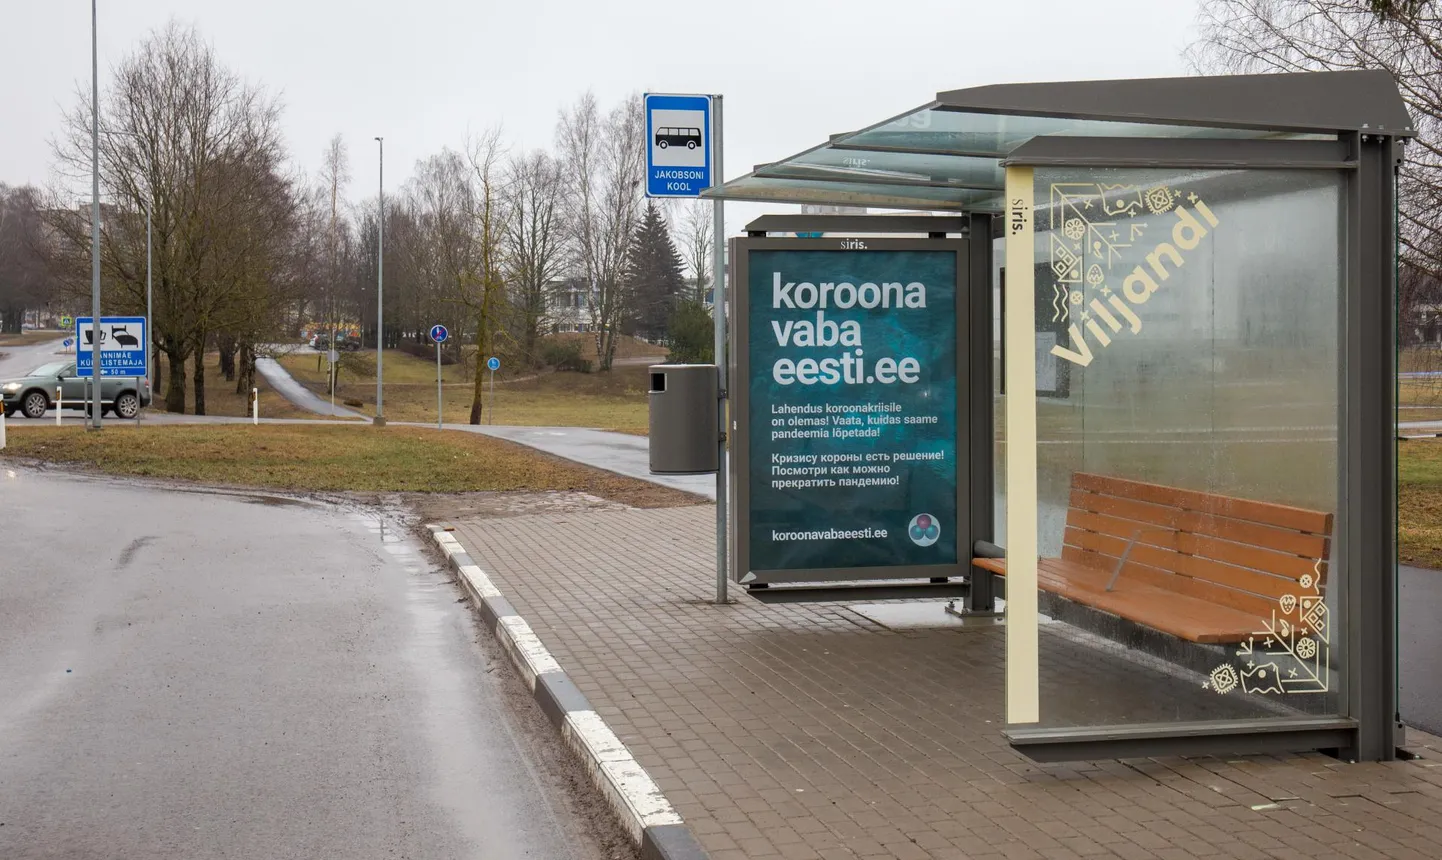 Реклама ядовитого вещества на автобусной остановке.